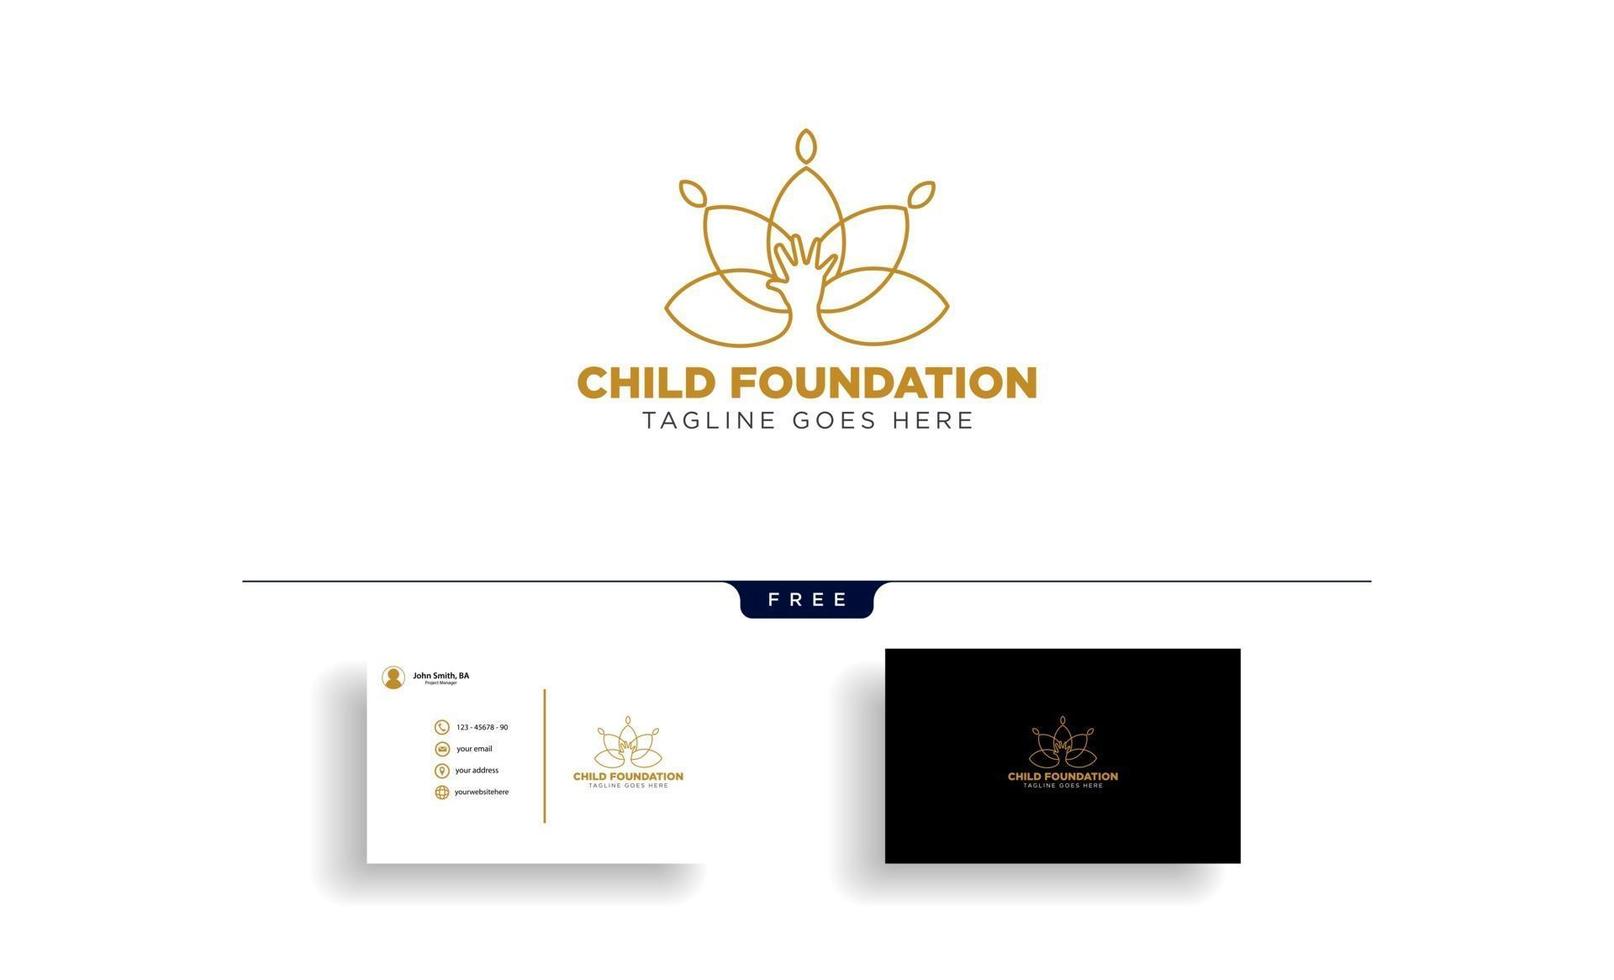 vetor de modelo de logotipo de cuidado de mãe e filho ou crianças isolado com vetor de cartão de visita